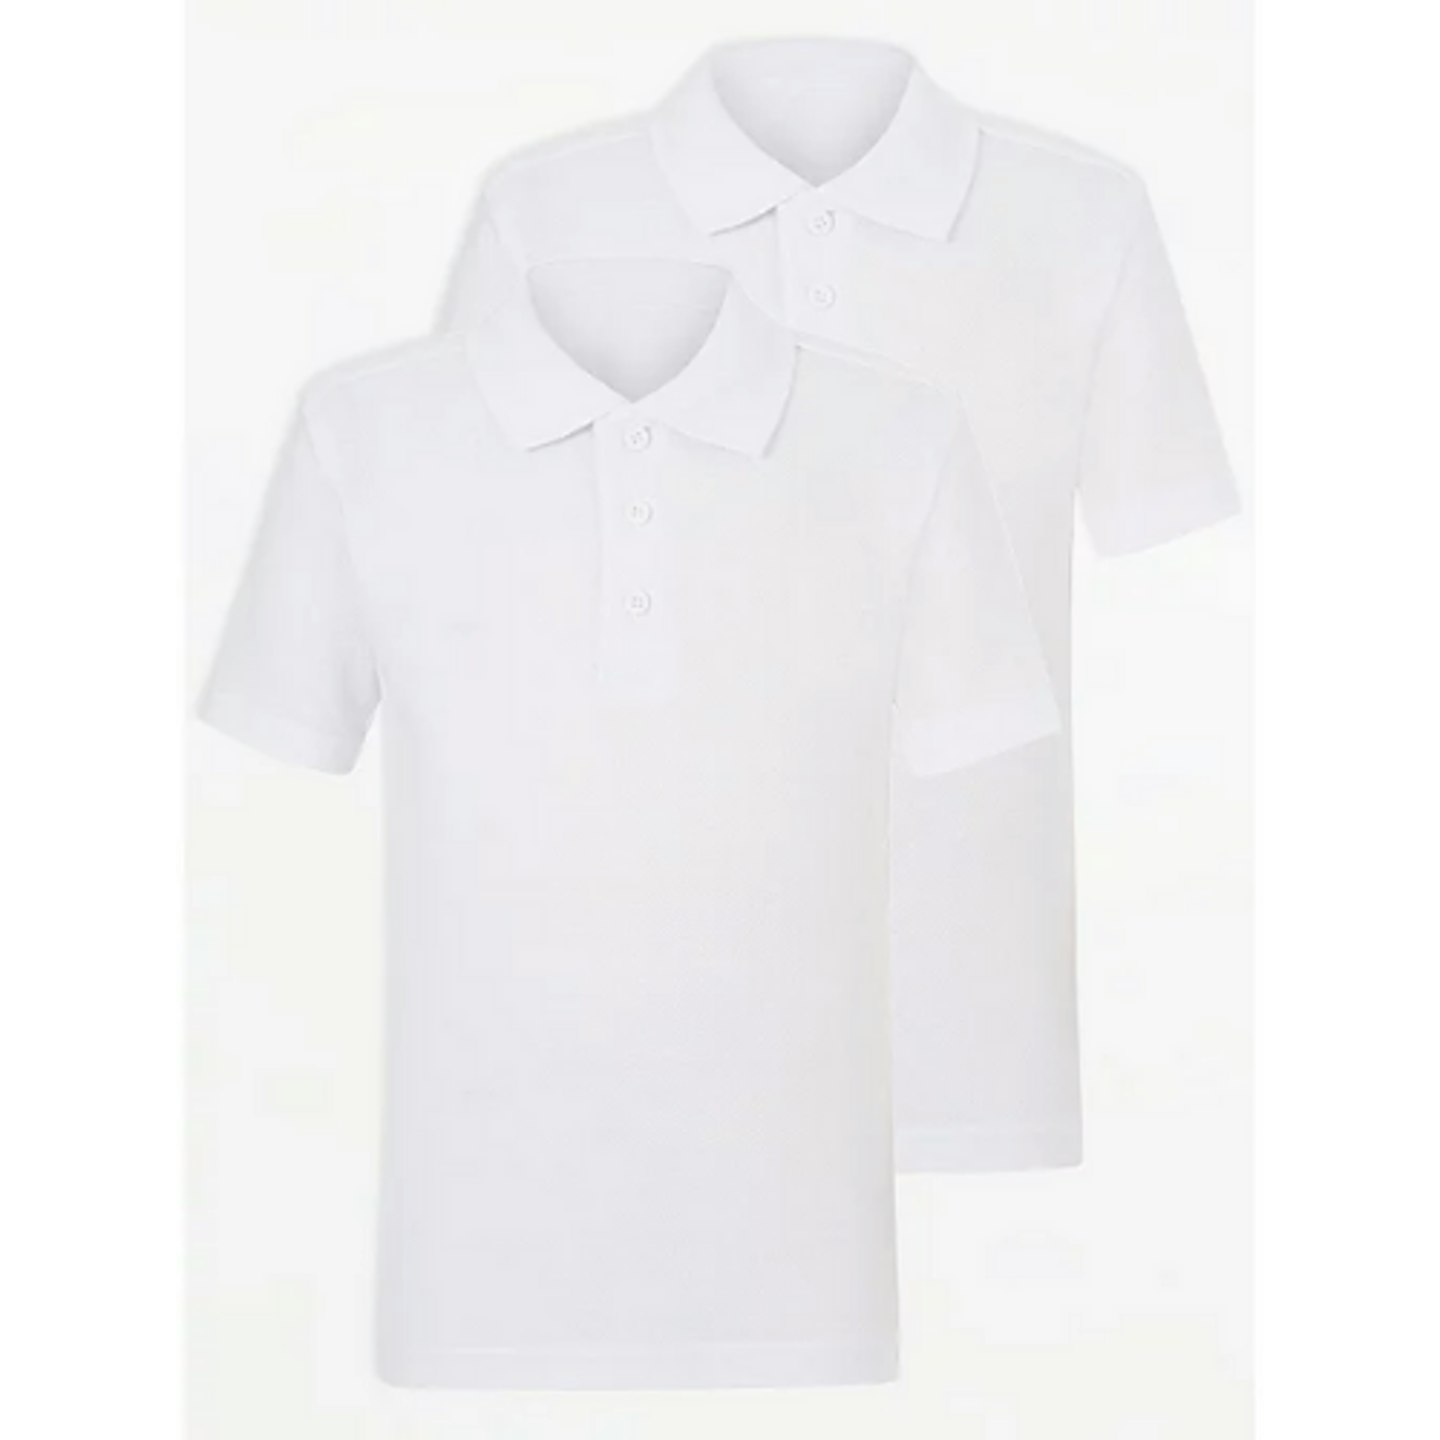 White School Short Sleeve Easy On Polo Shirt (2 Pack)